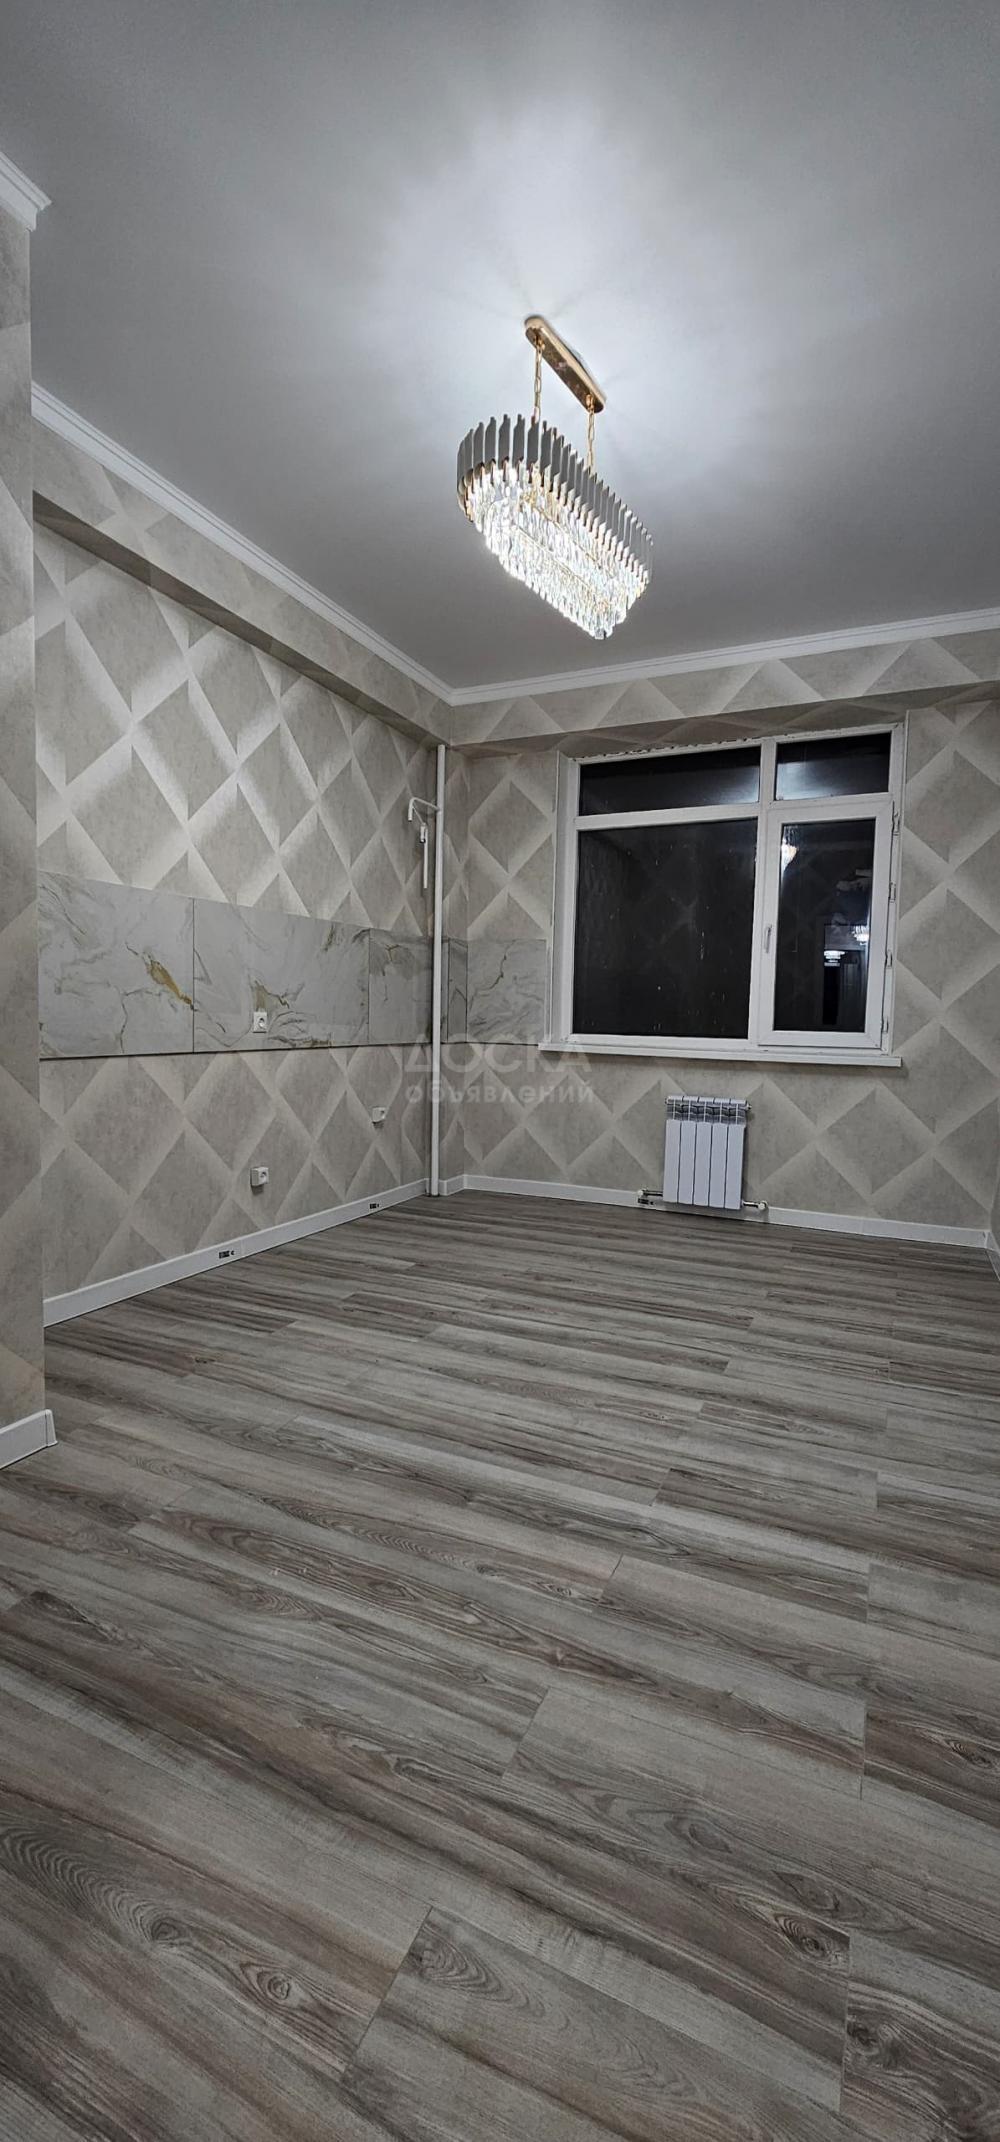 Продаю 3-комнатную квартиру, 85кв. м., этаж - 3/14, Анкара/Чокана Валиханова, 93000$.